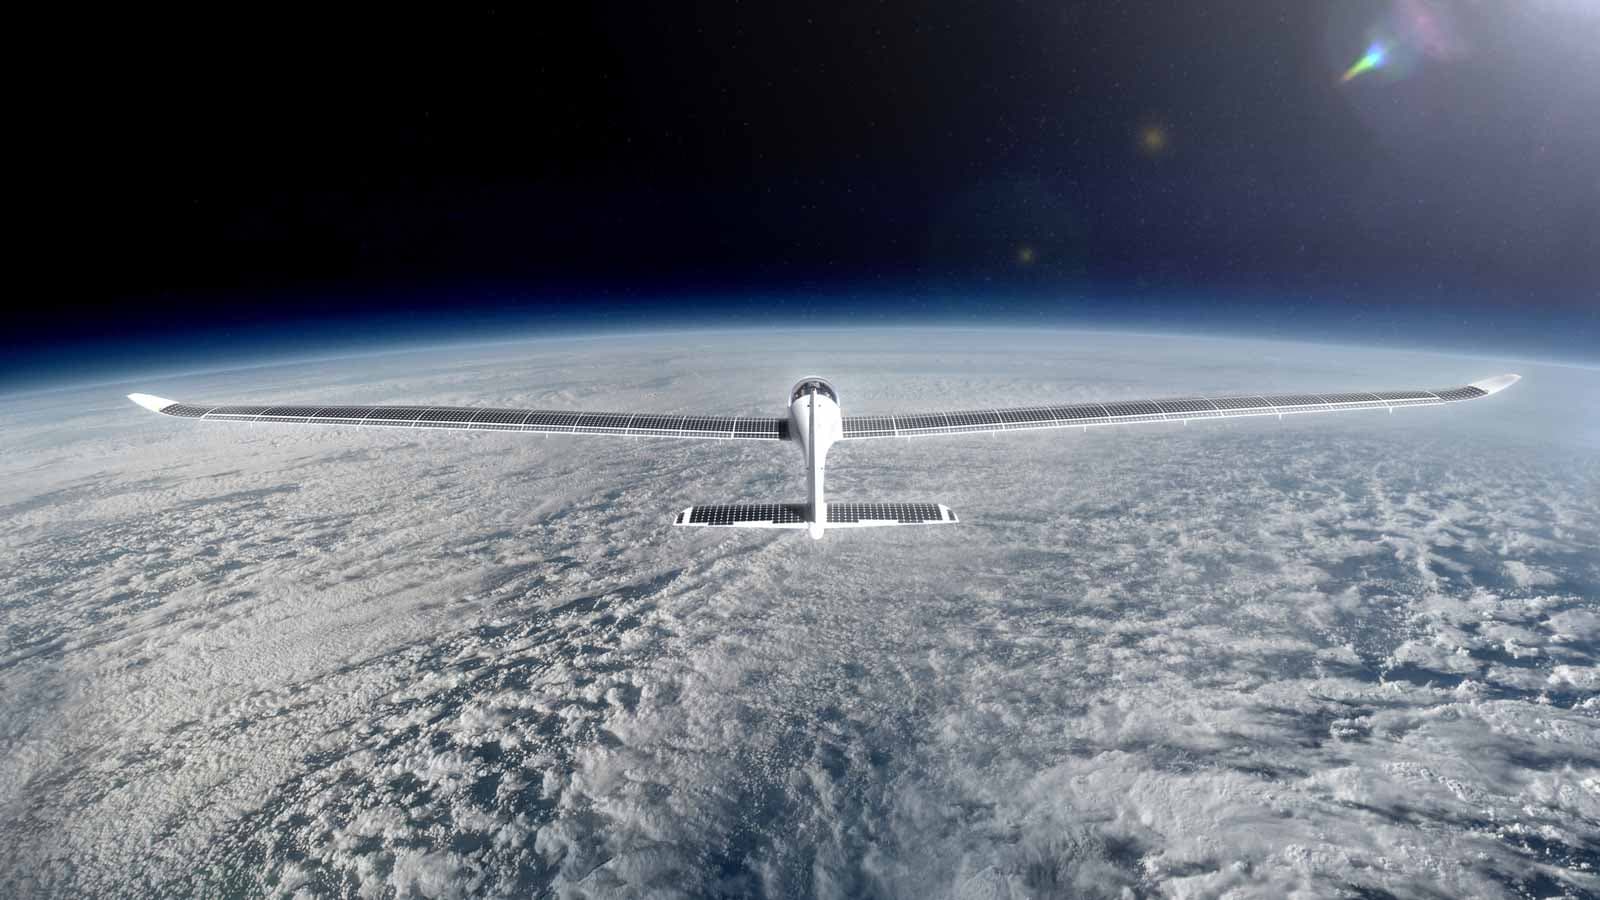 Trải nghiệm du lịch độc lạ: Thám hiểm rìa không gian bằng máy bay năng lượng mặt trời